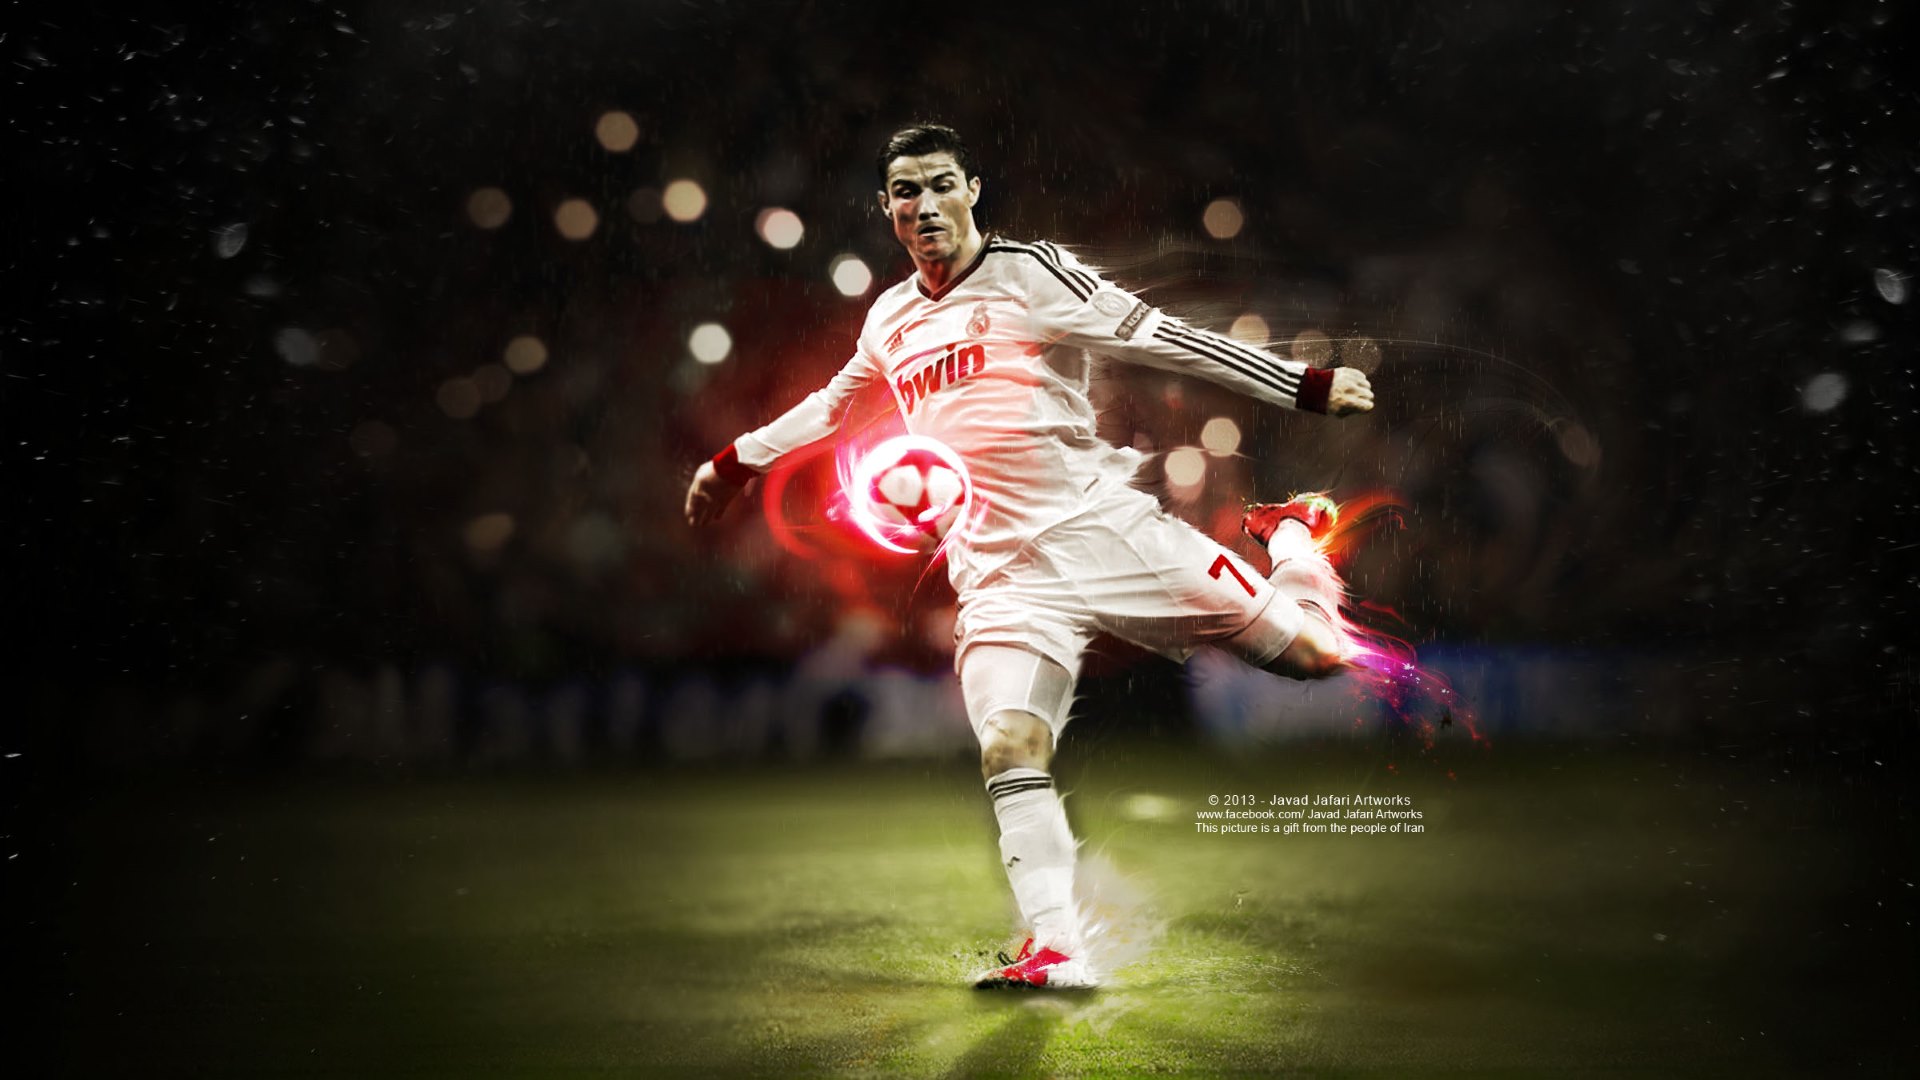 Wallpaper HD Cristiano Ronaldo New